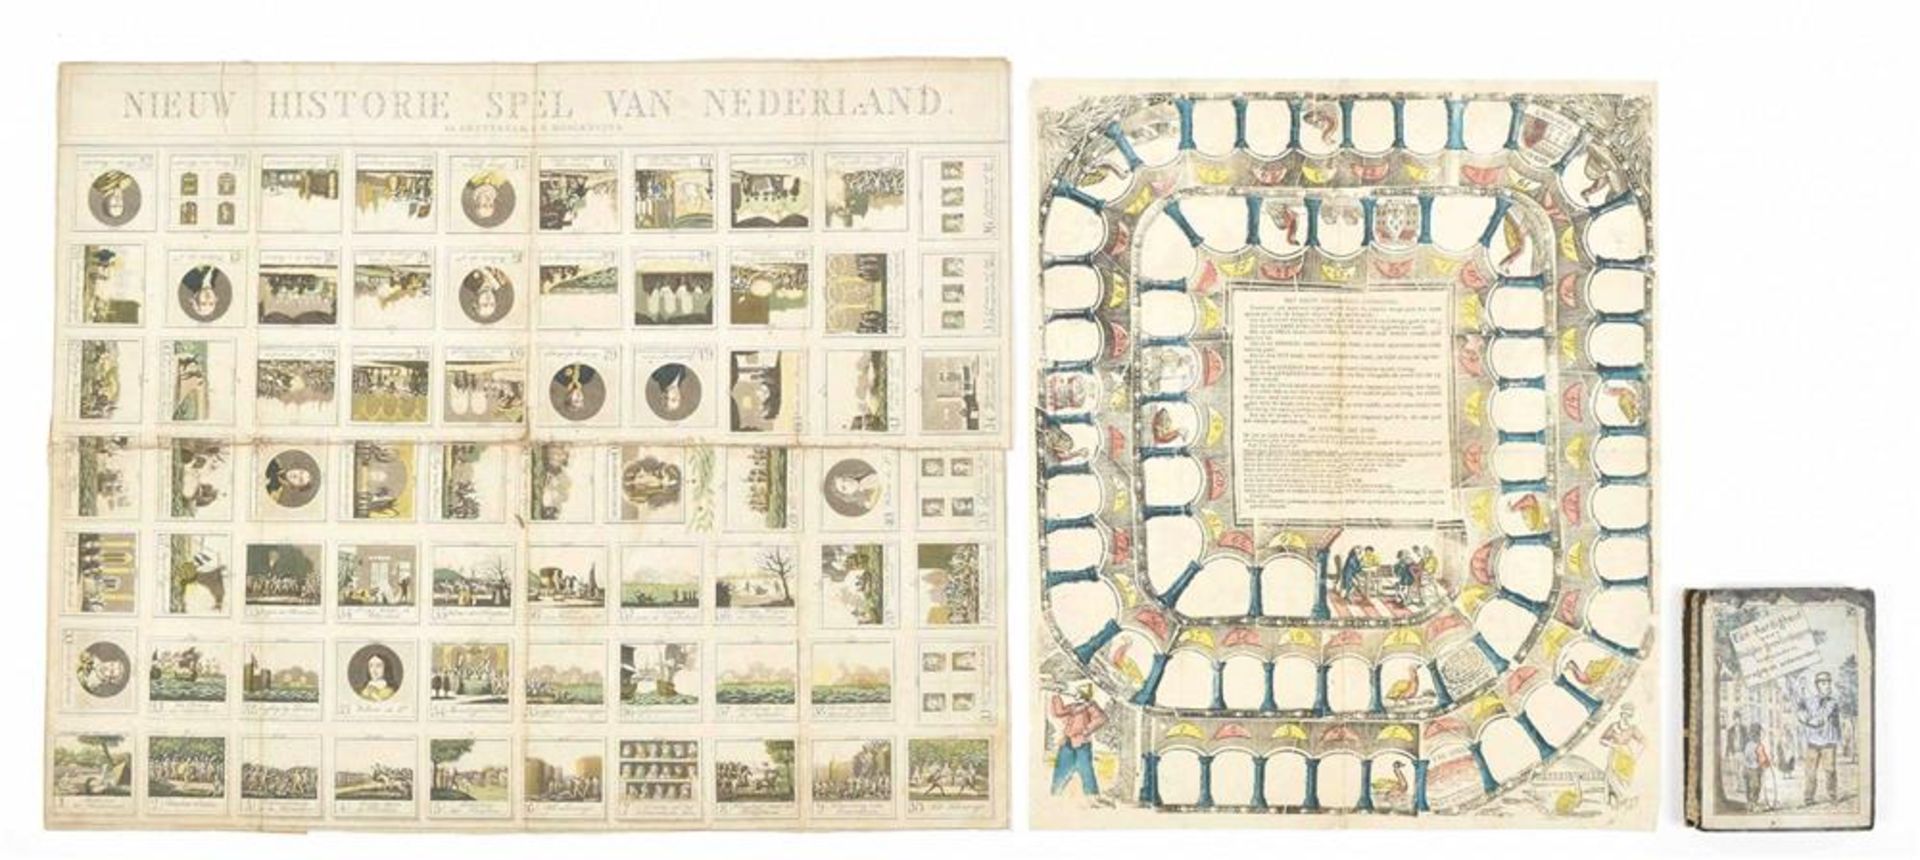 [Paper board games] Nieuw Historie spel van Nederland